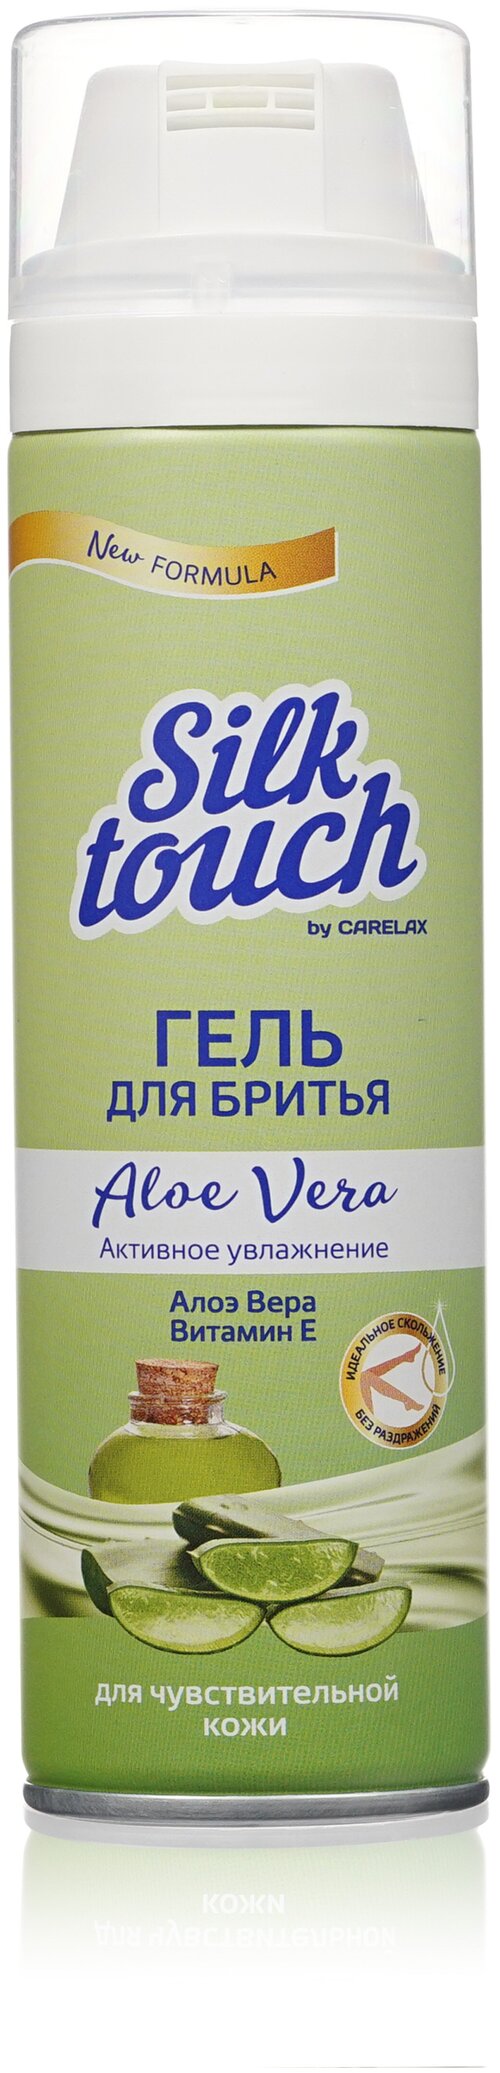 Гель для бритья Carelax Silk Touch женский, Алоэ Вера для чувствительной кожи, 200 мл.